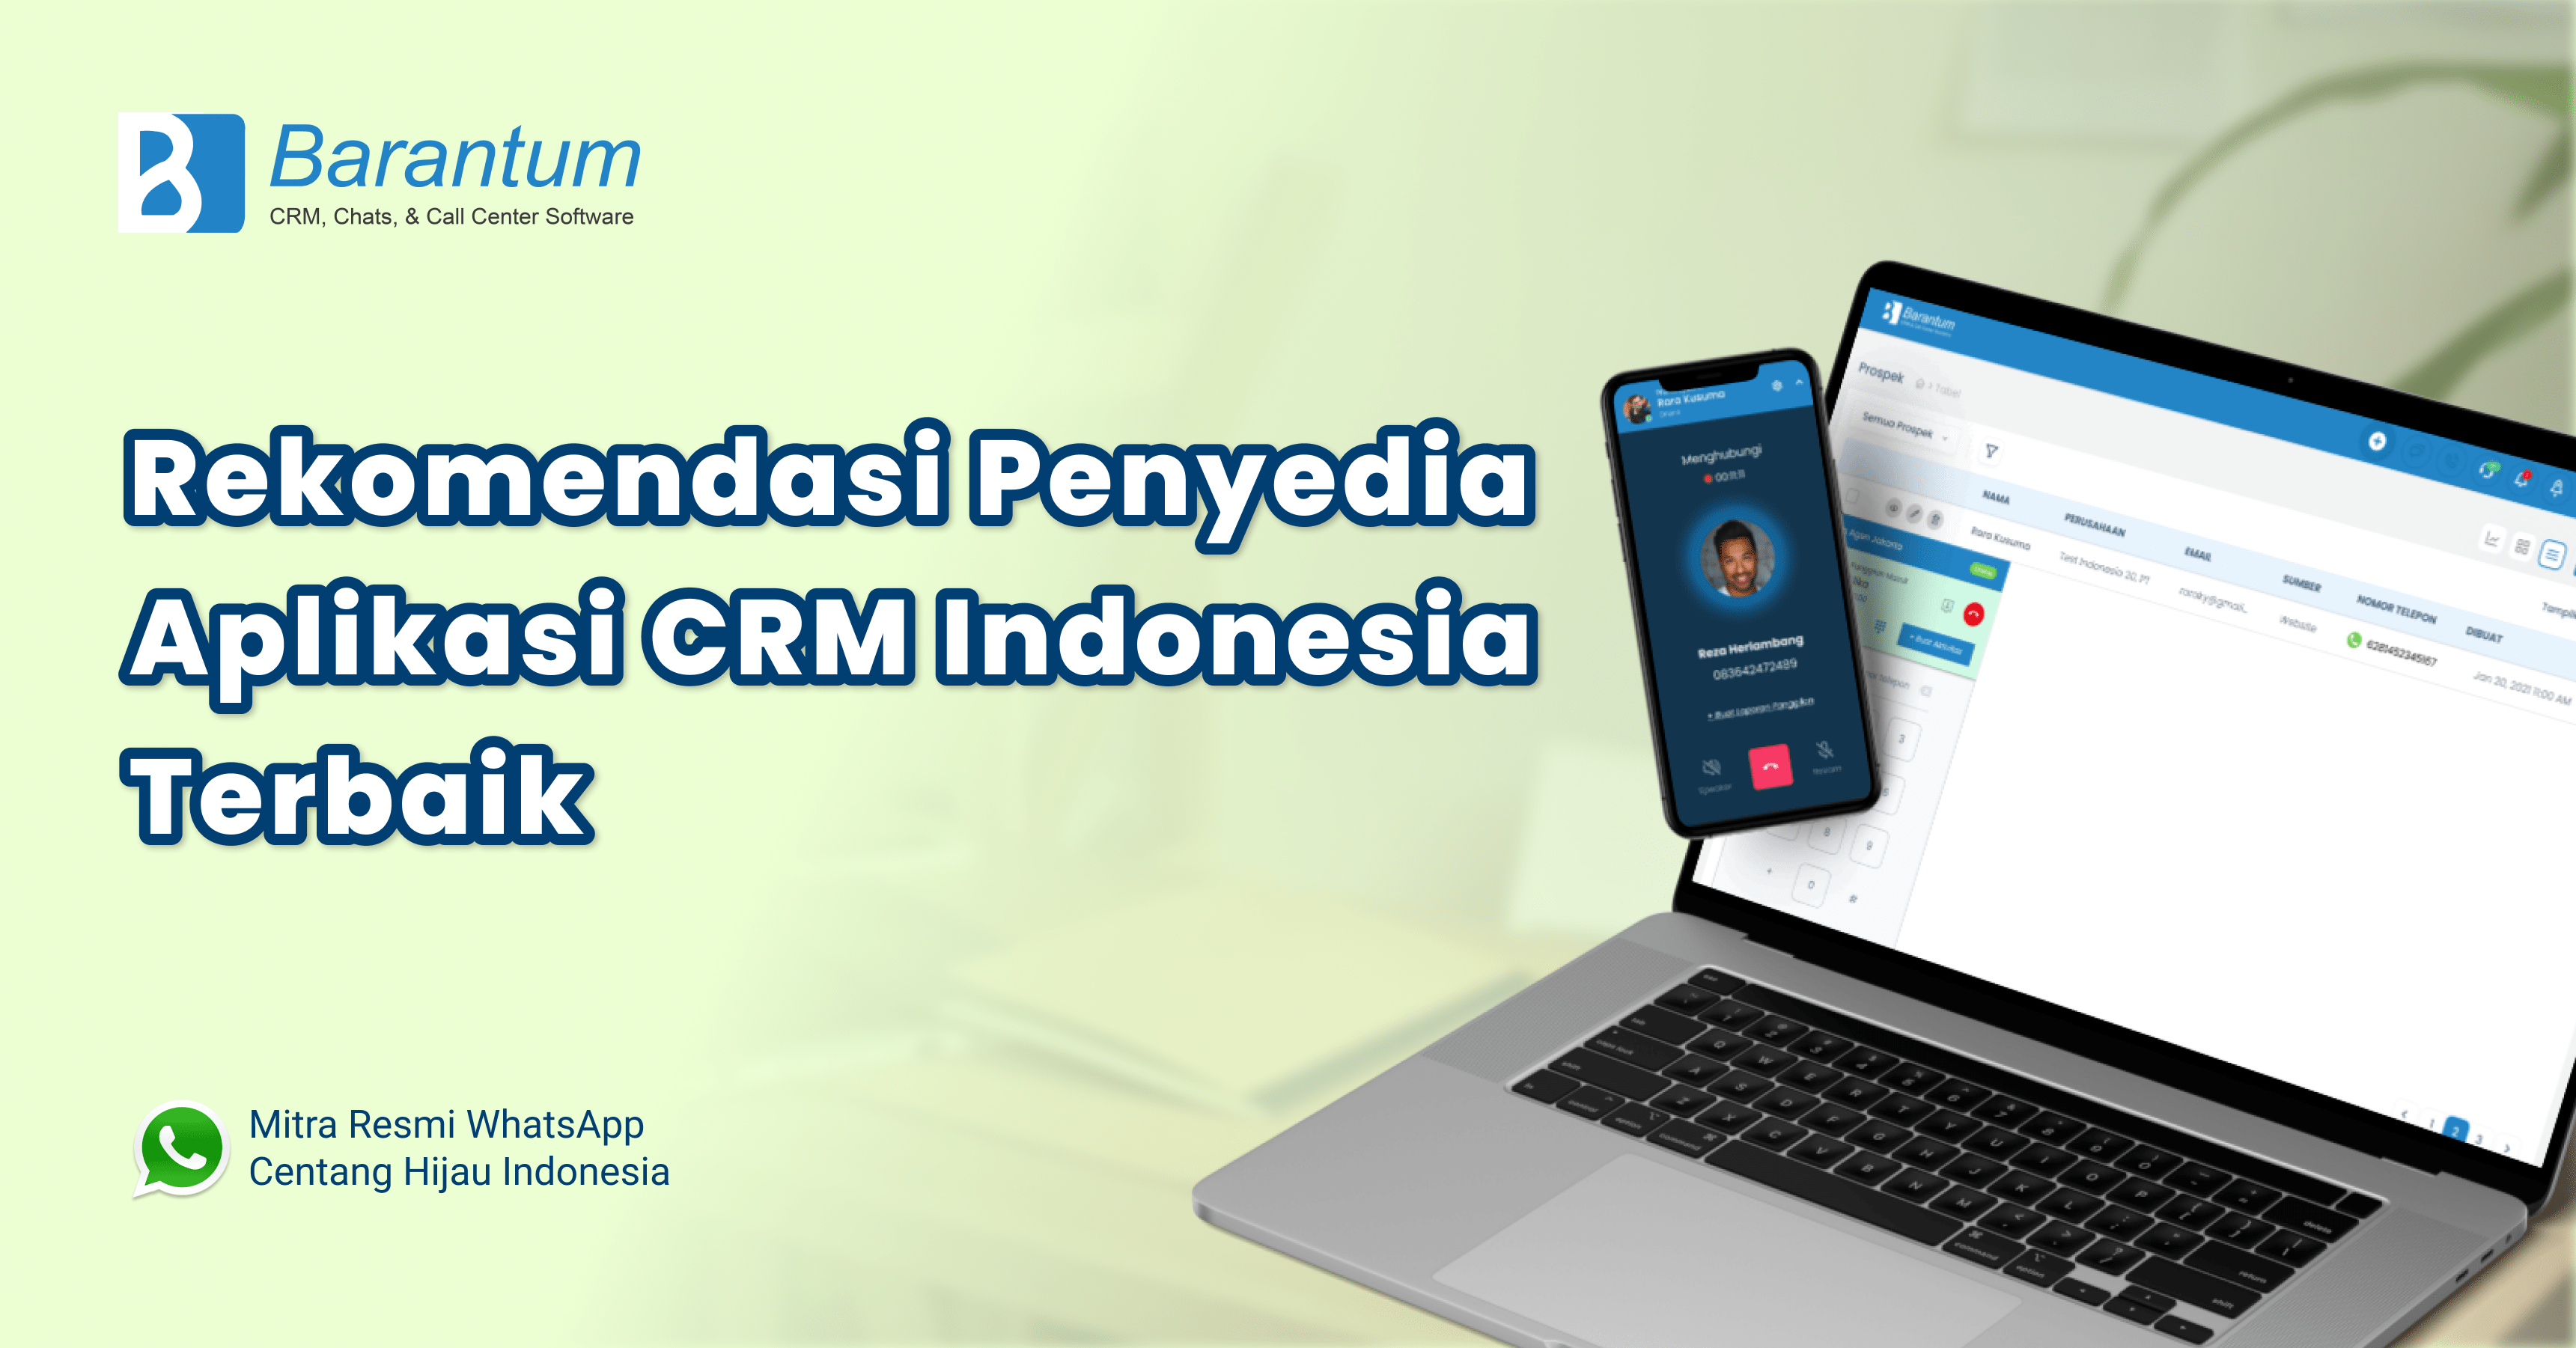 CRM-Indonesia-terbaik